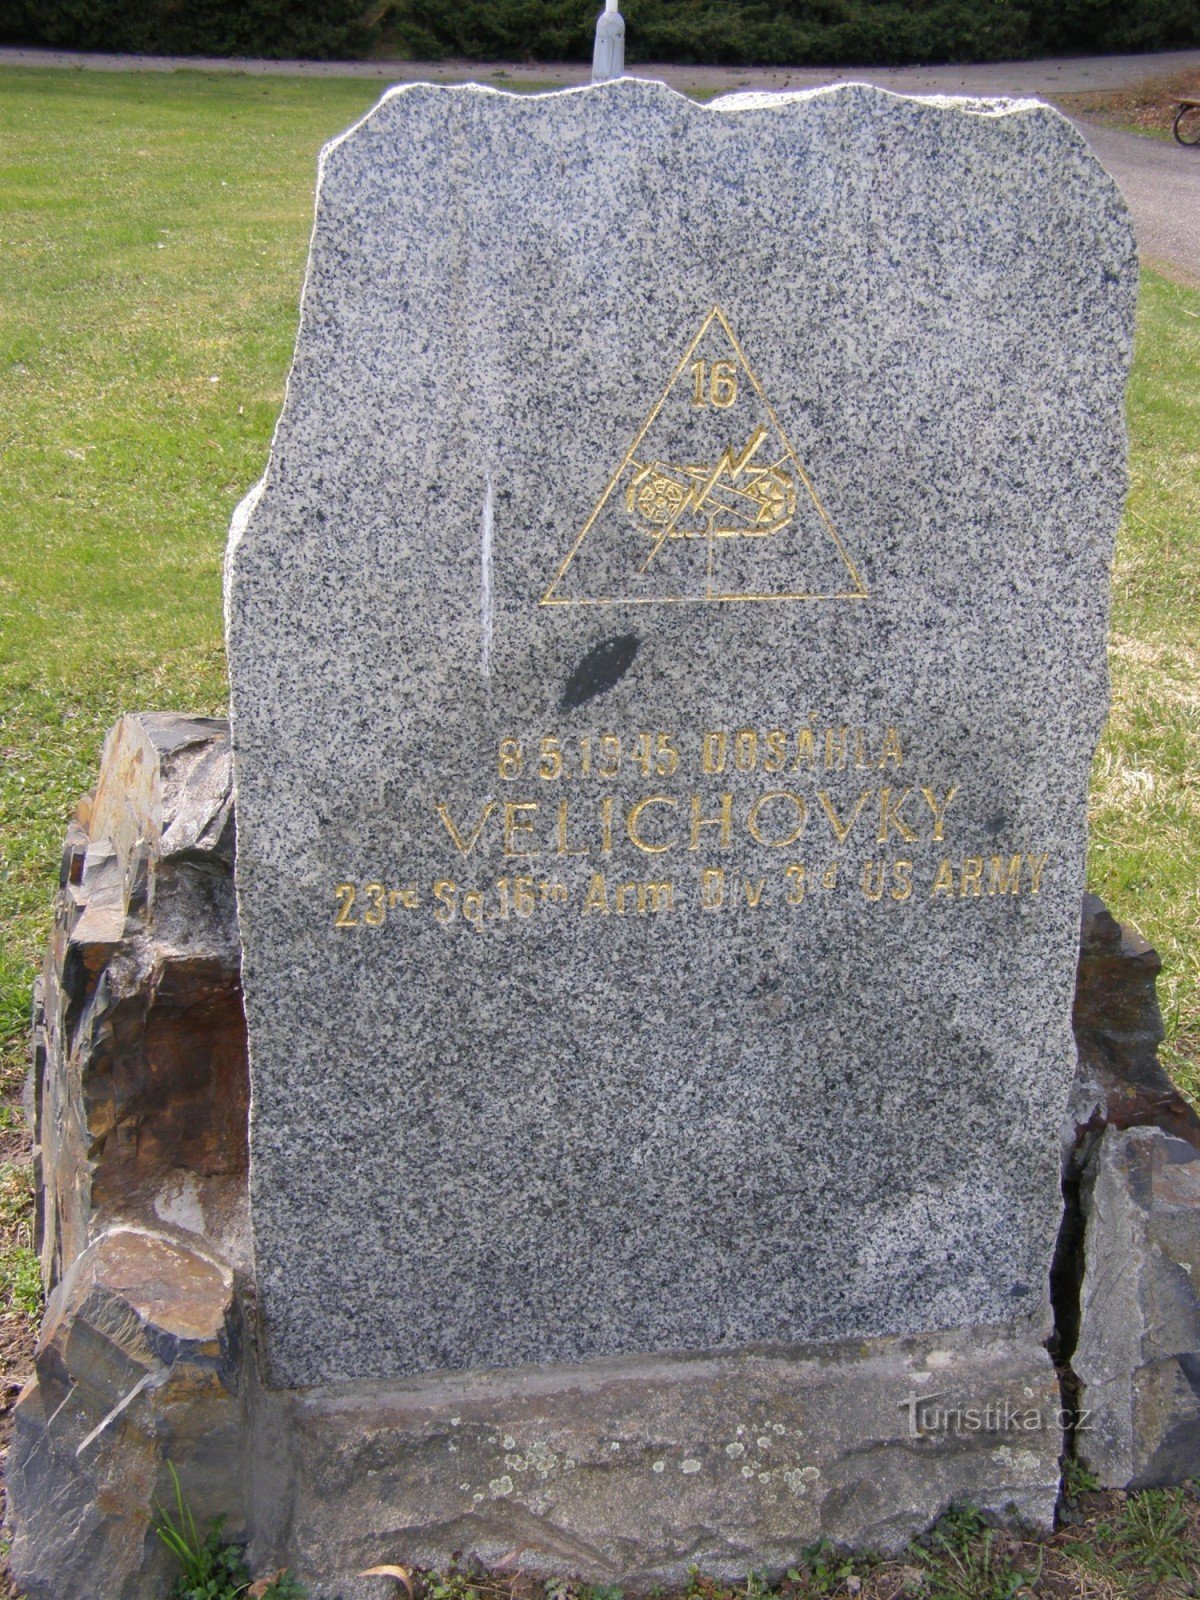 Velichovky - az amerikai hadsereg emlékműve